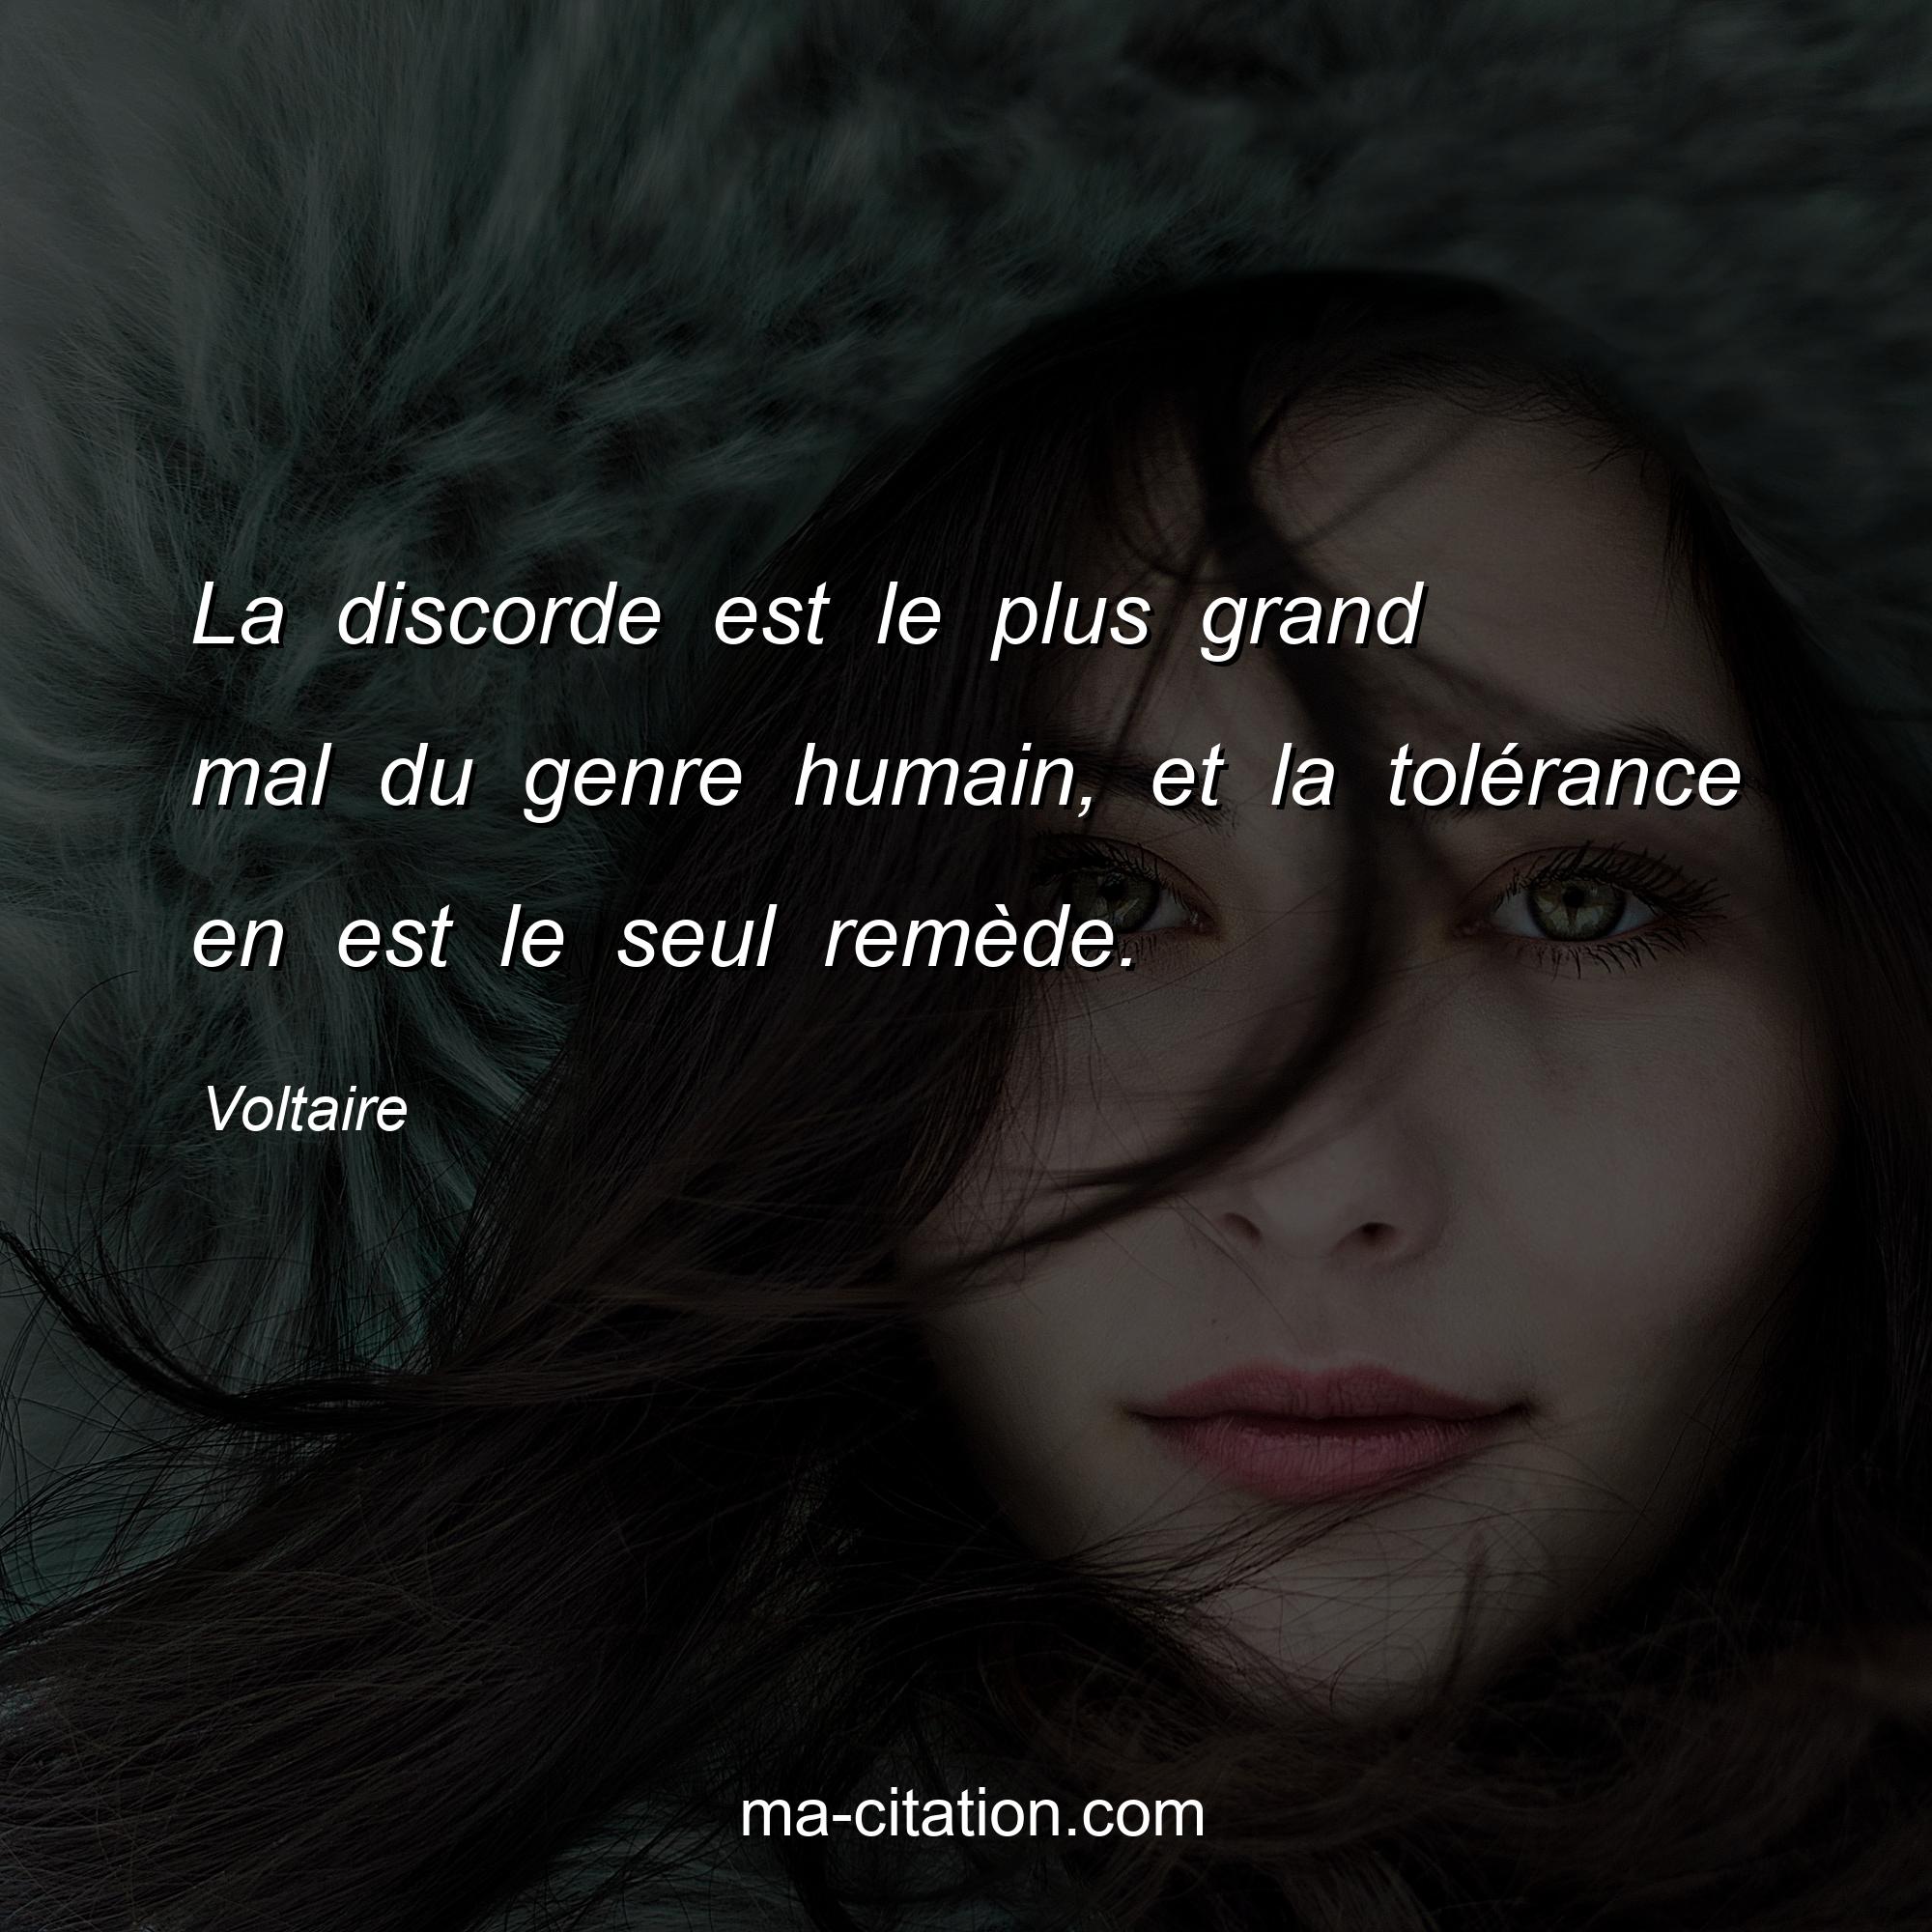 Voltaire : La discorde est le plus grand mal du genre humain, et la tolérance en est le seul remède.